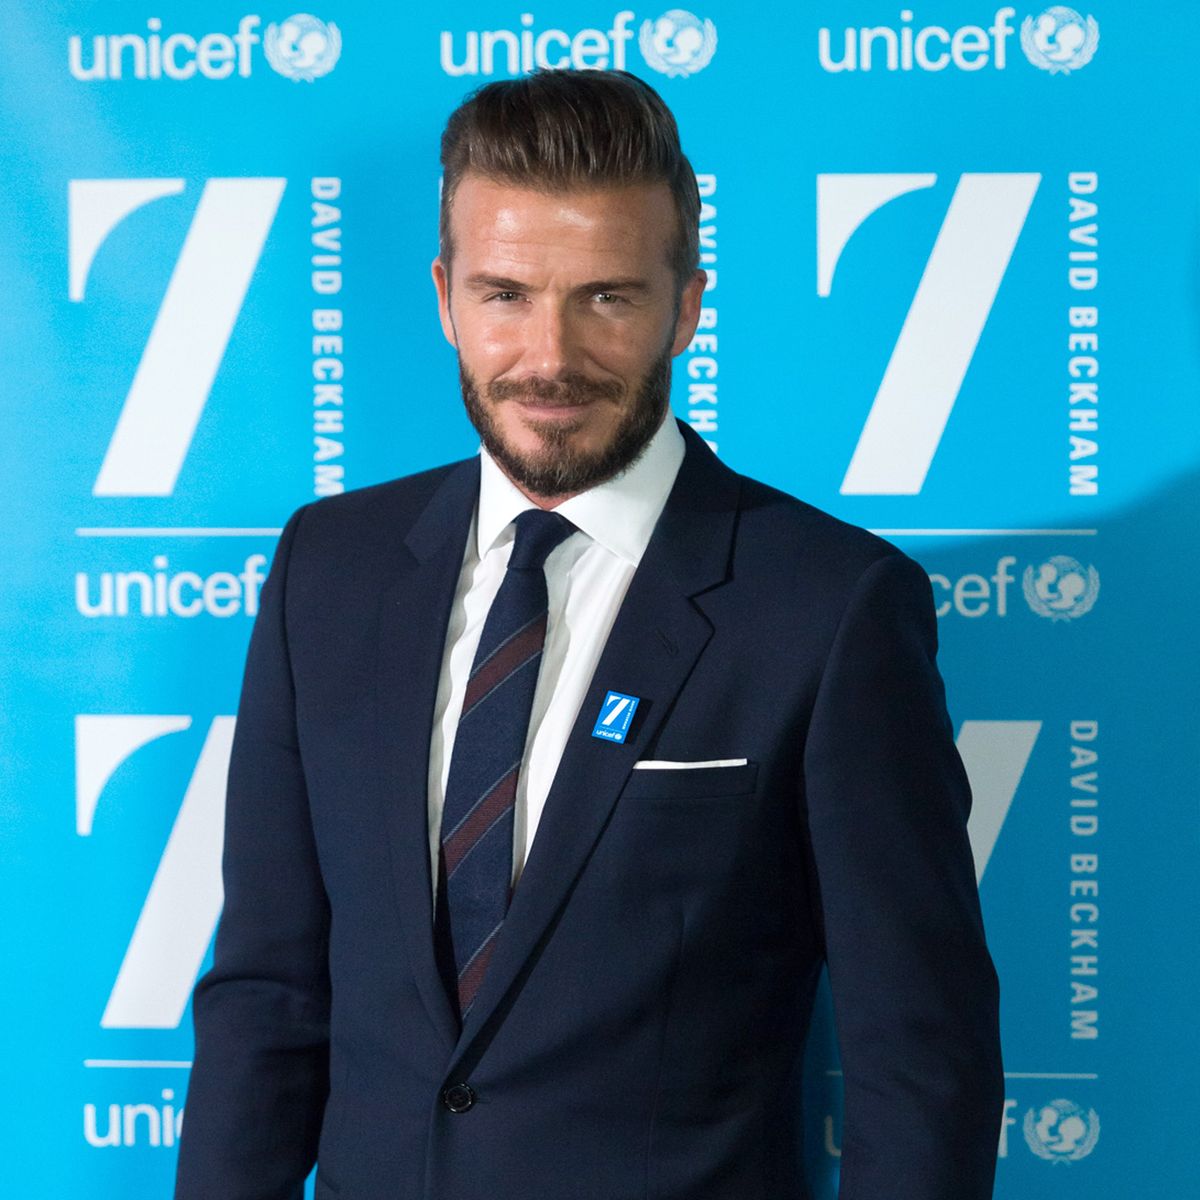 David Beckham's Q1 deliverable is the nu-CEO suit